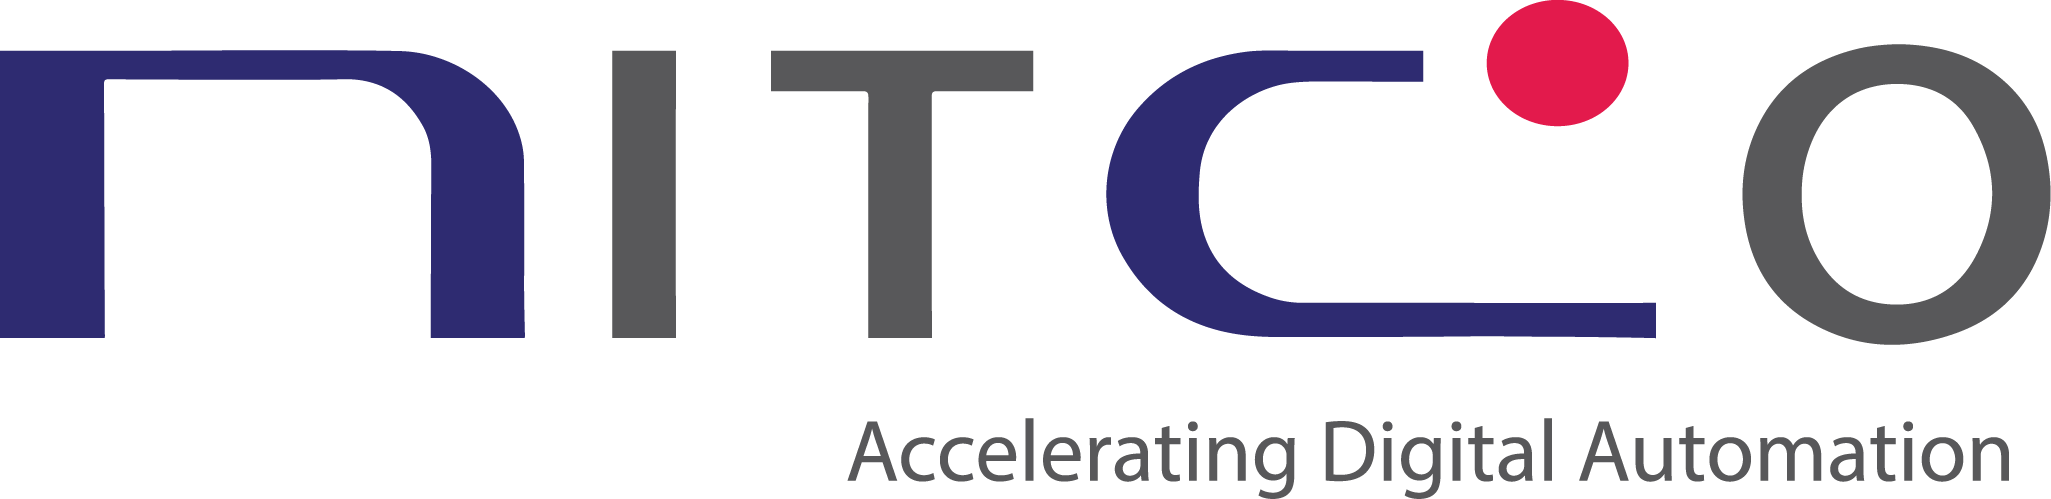 NITCO Inc logo